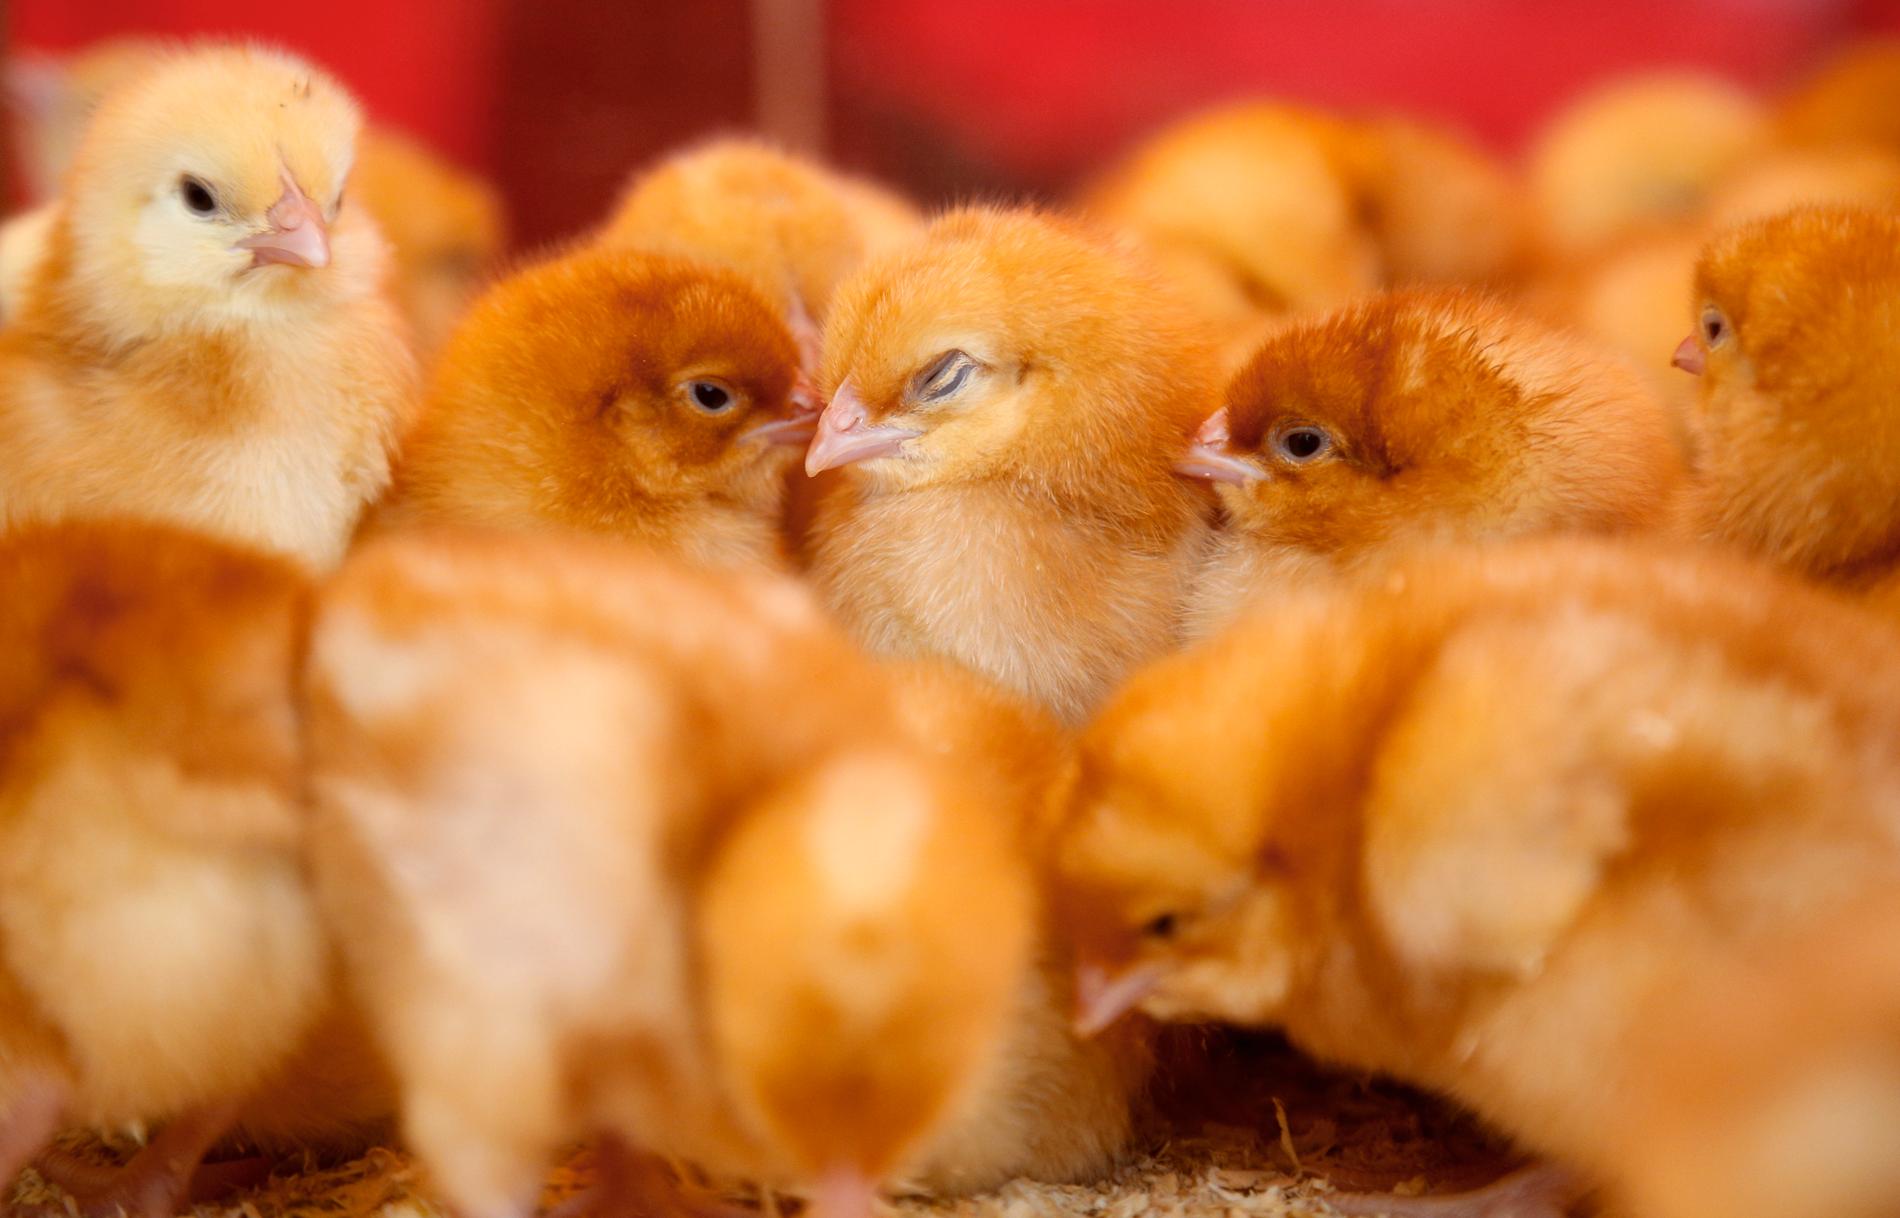 Varför leker kycklingar? Det ska nu forskare ta reda på. Arkivbild.